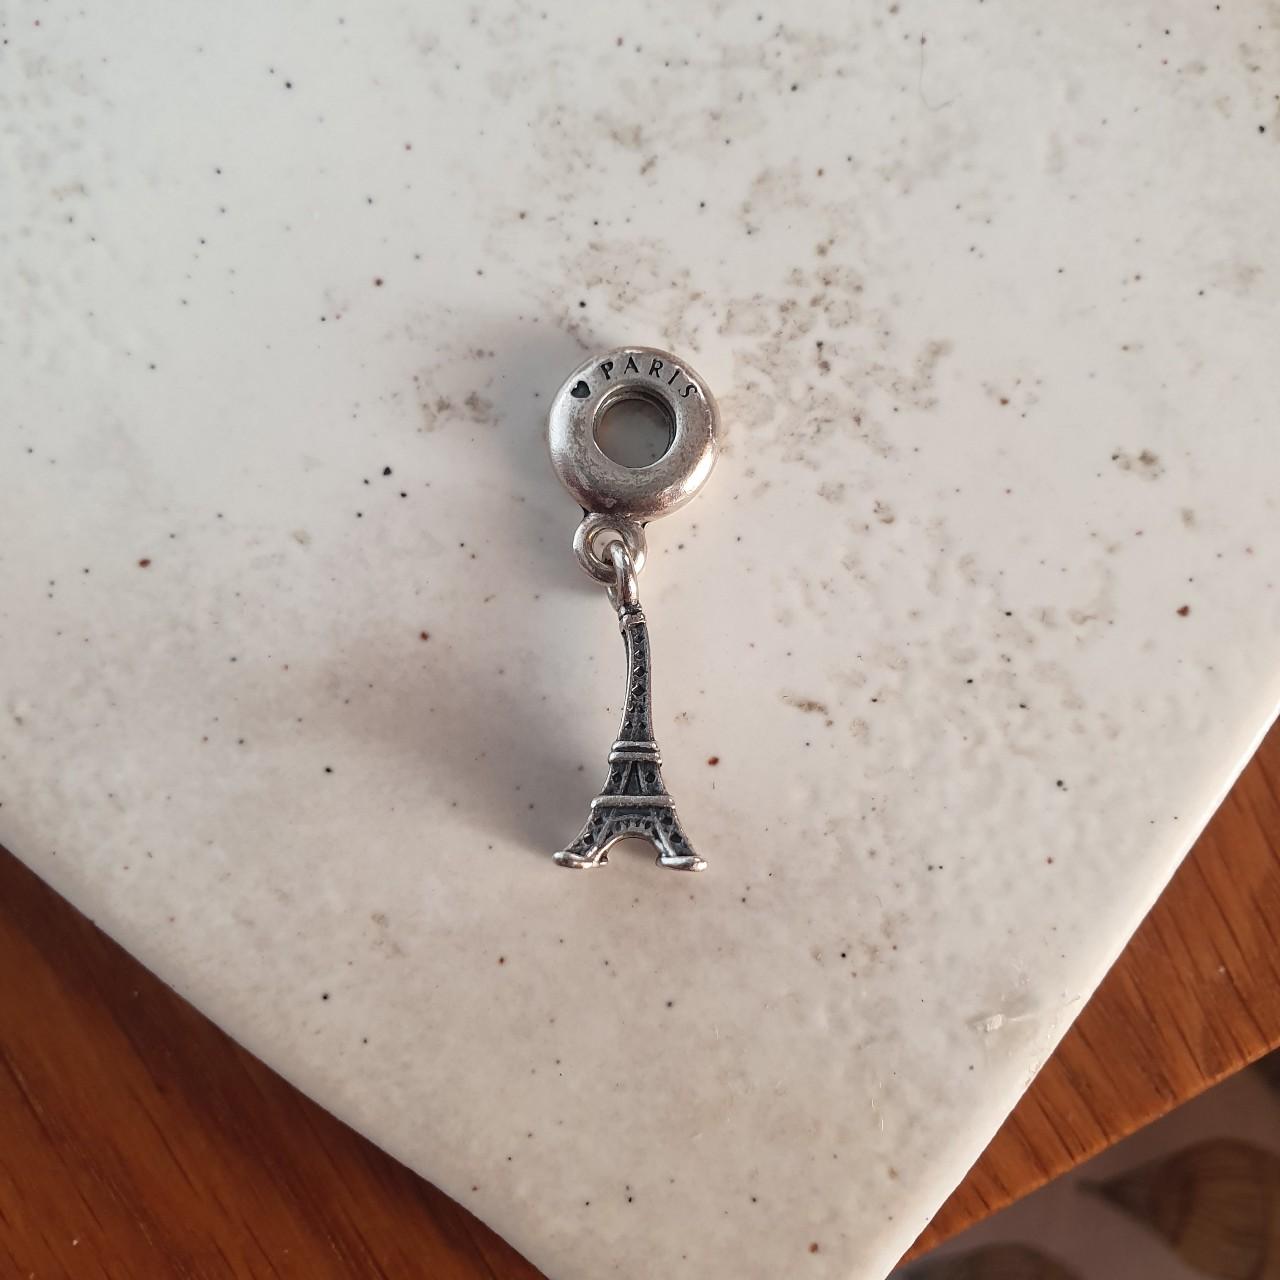 Pandora Paris Eiffel Tower charm (slightly bent) - Depop